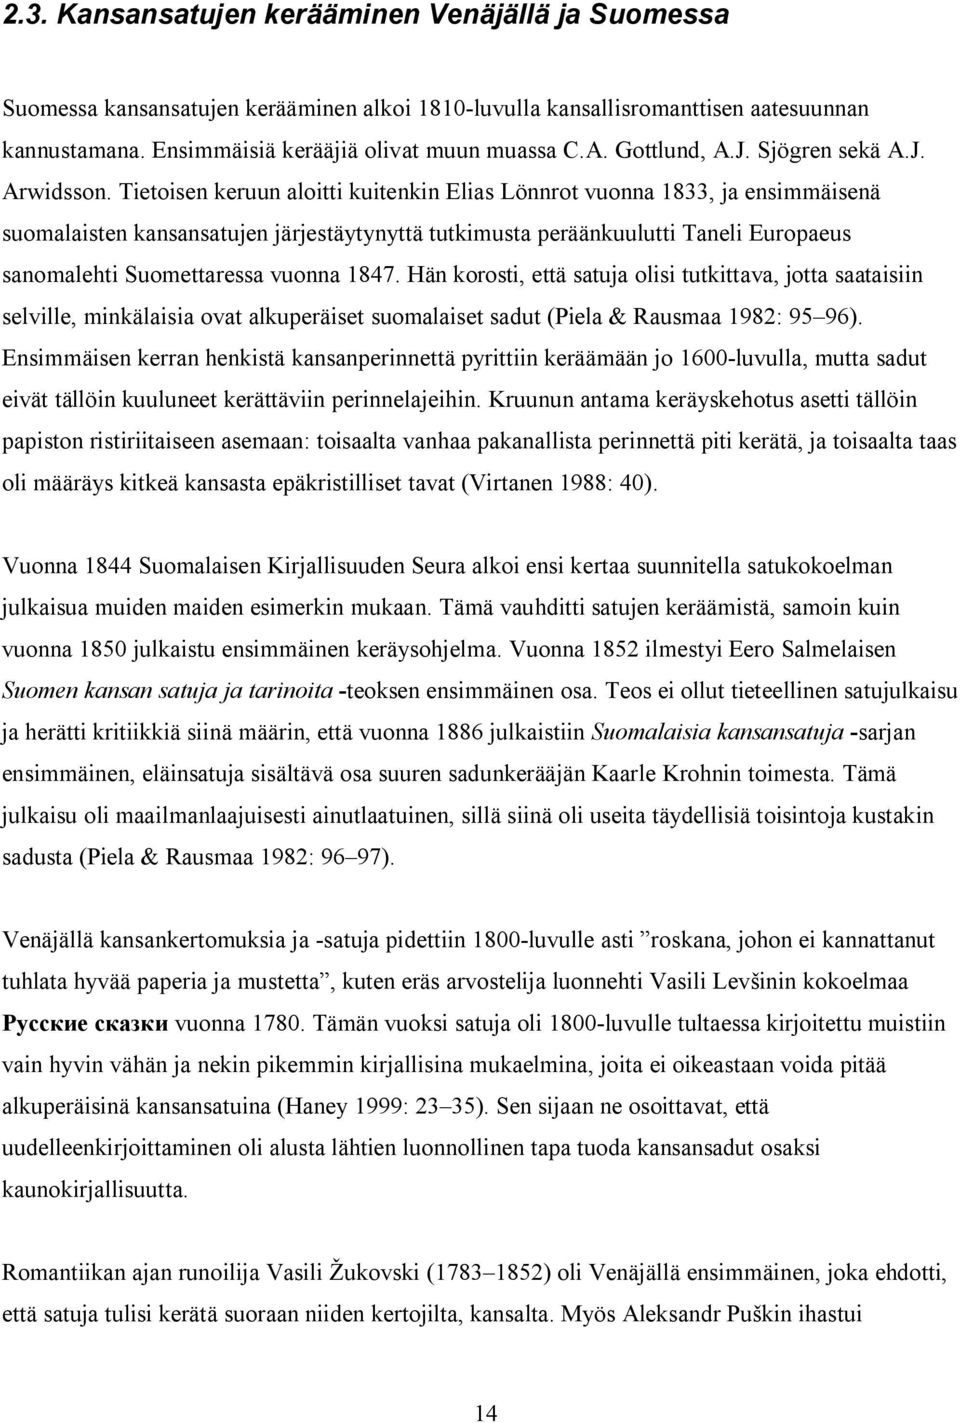 Tietoisen keruun aloitti kuitenkin Elias Lönnrot vuonna 1833, ja ensimmäisenä suomalaisten kansansatujen järjestäytynyttä tutkimusta peräänkuulutti Taneli Europaeus sanomalehti Suomettaressa vuonna